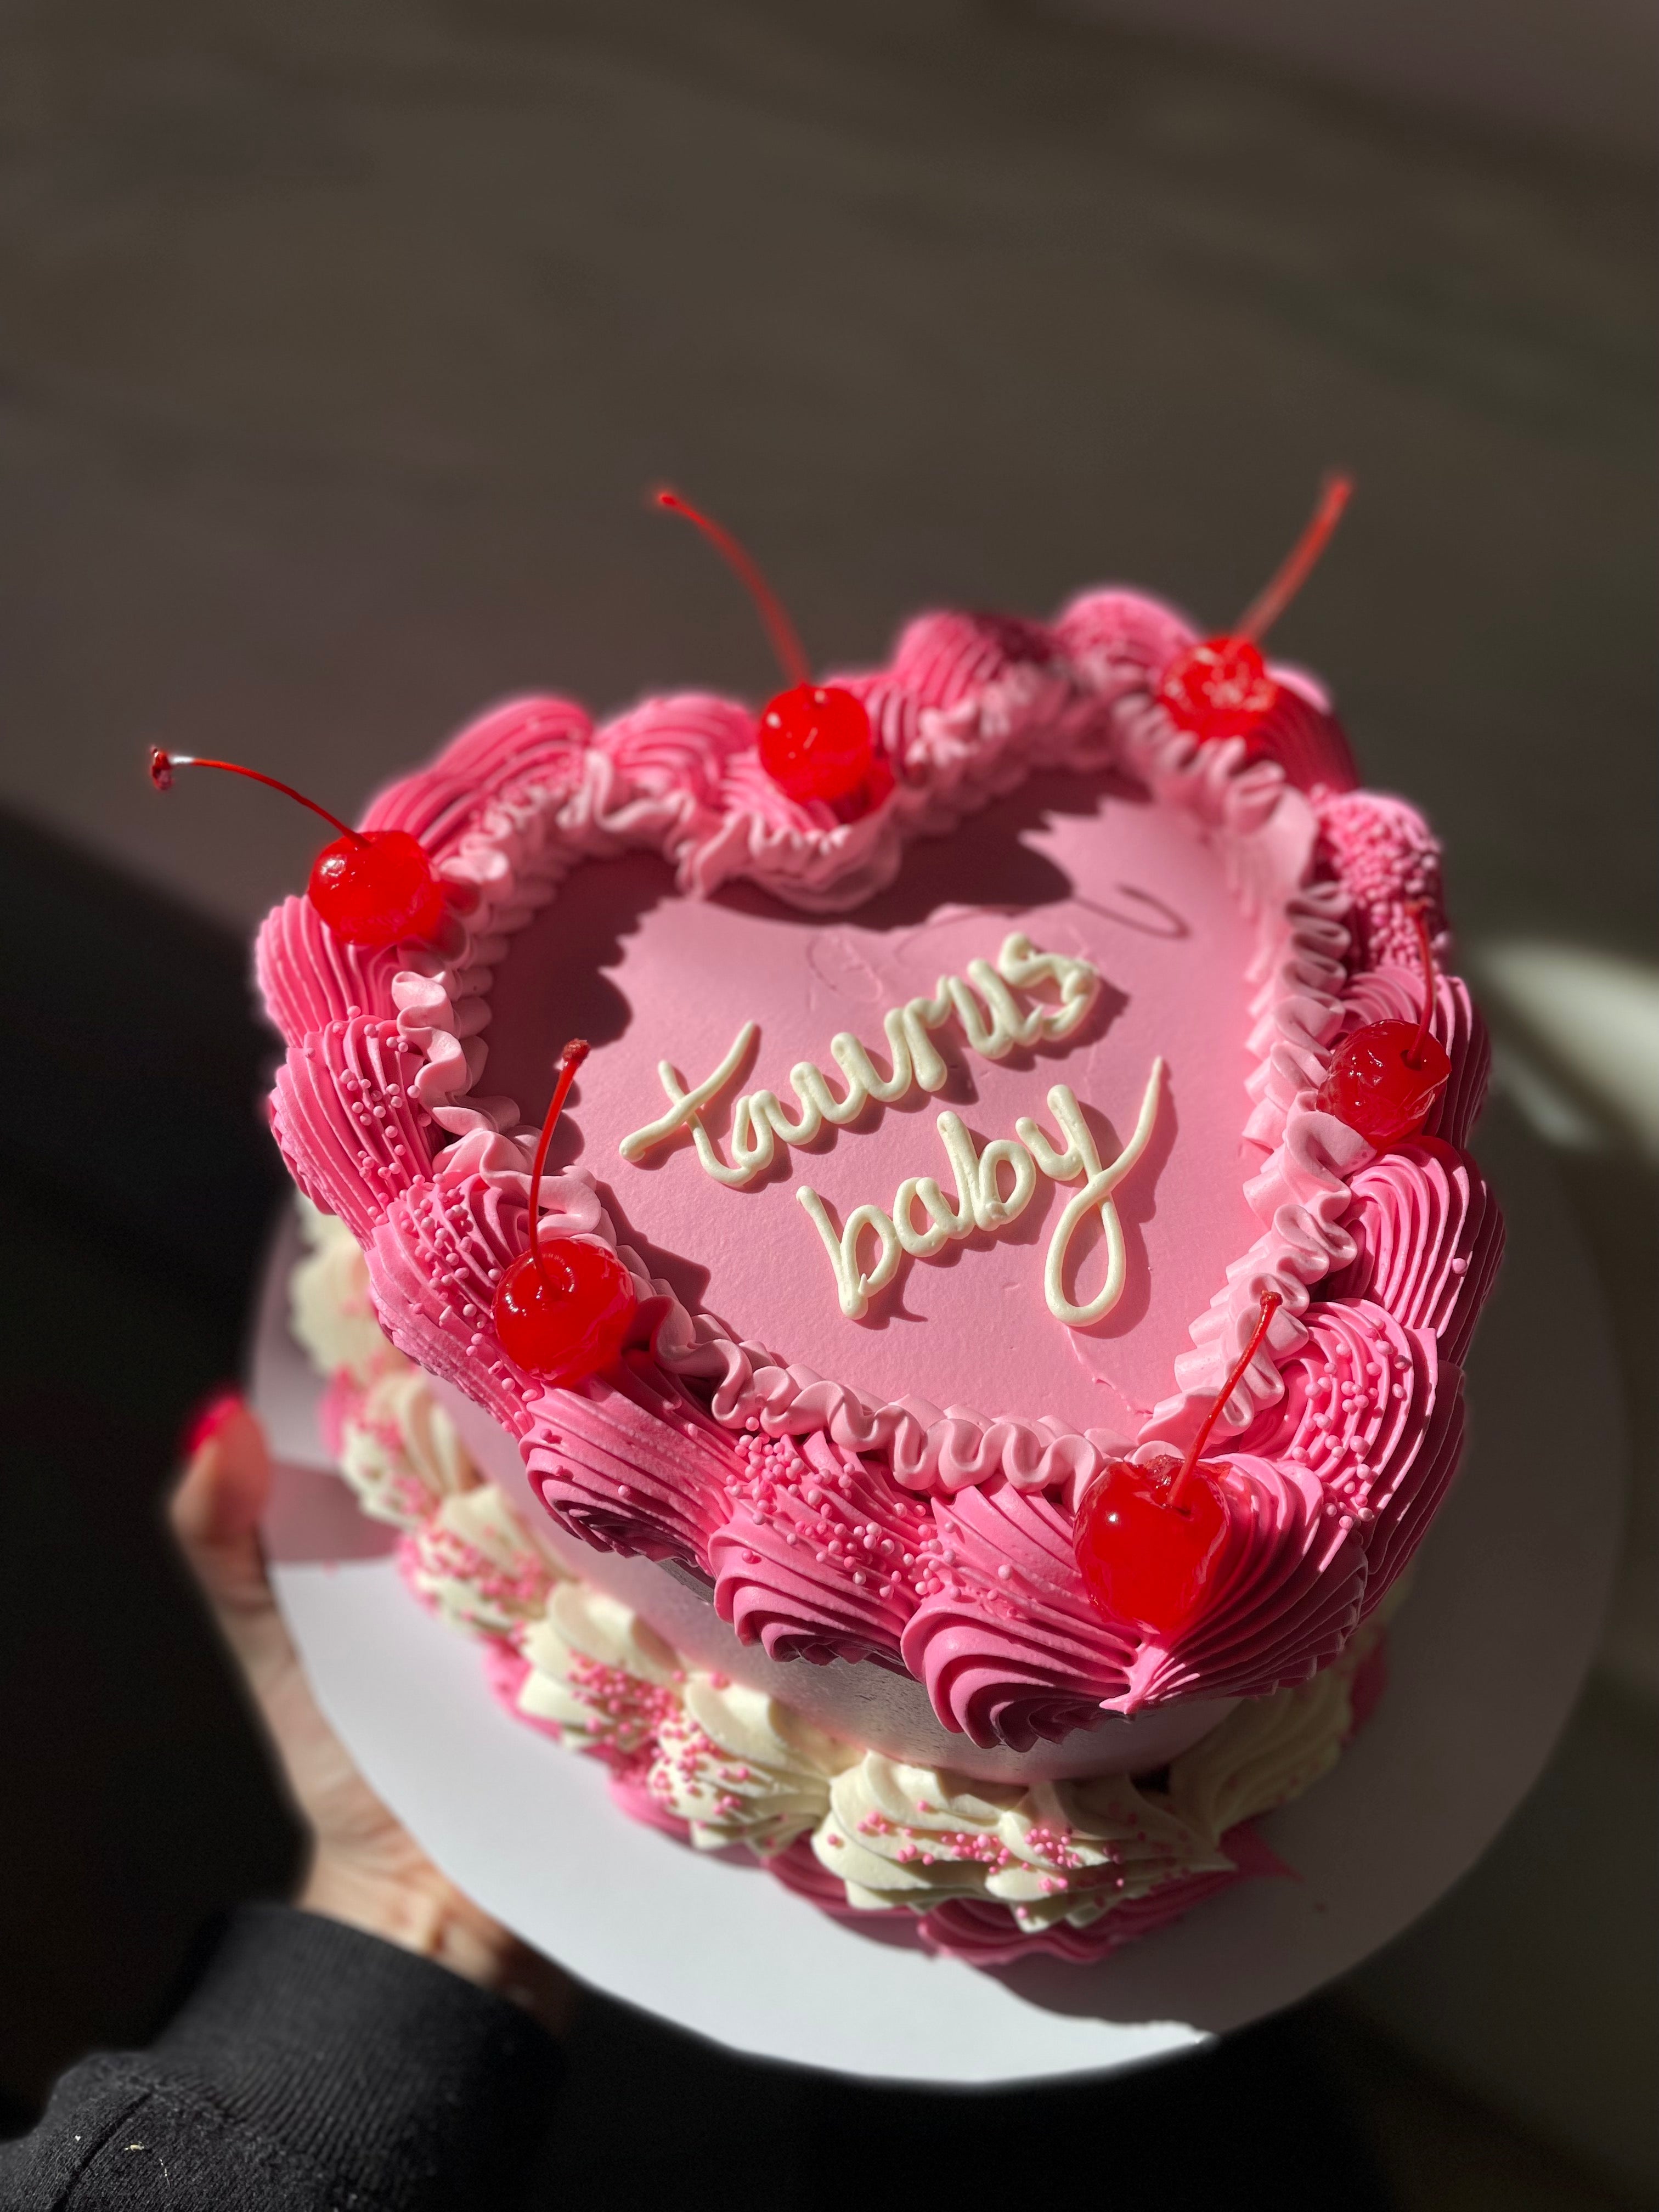 Heart Shaped Cake Decorating Ideas /Engagement Heart Shape Cake/Chocolate Heart  Cake Design | Heart cake design, Chocolate heart cakes, Heart shaped cakes